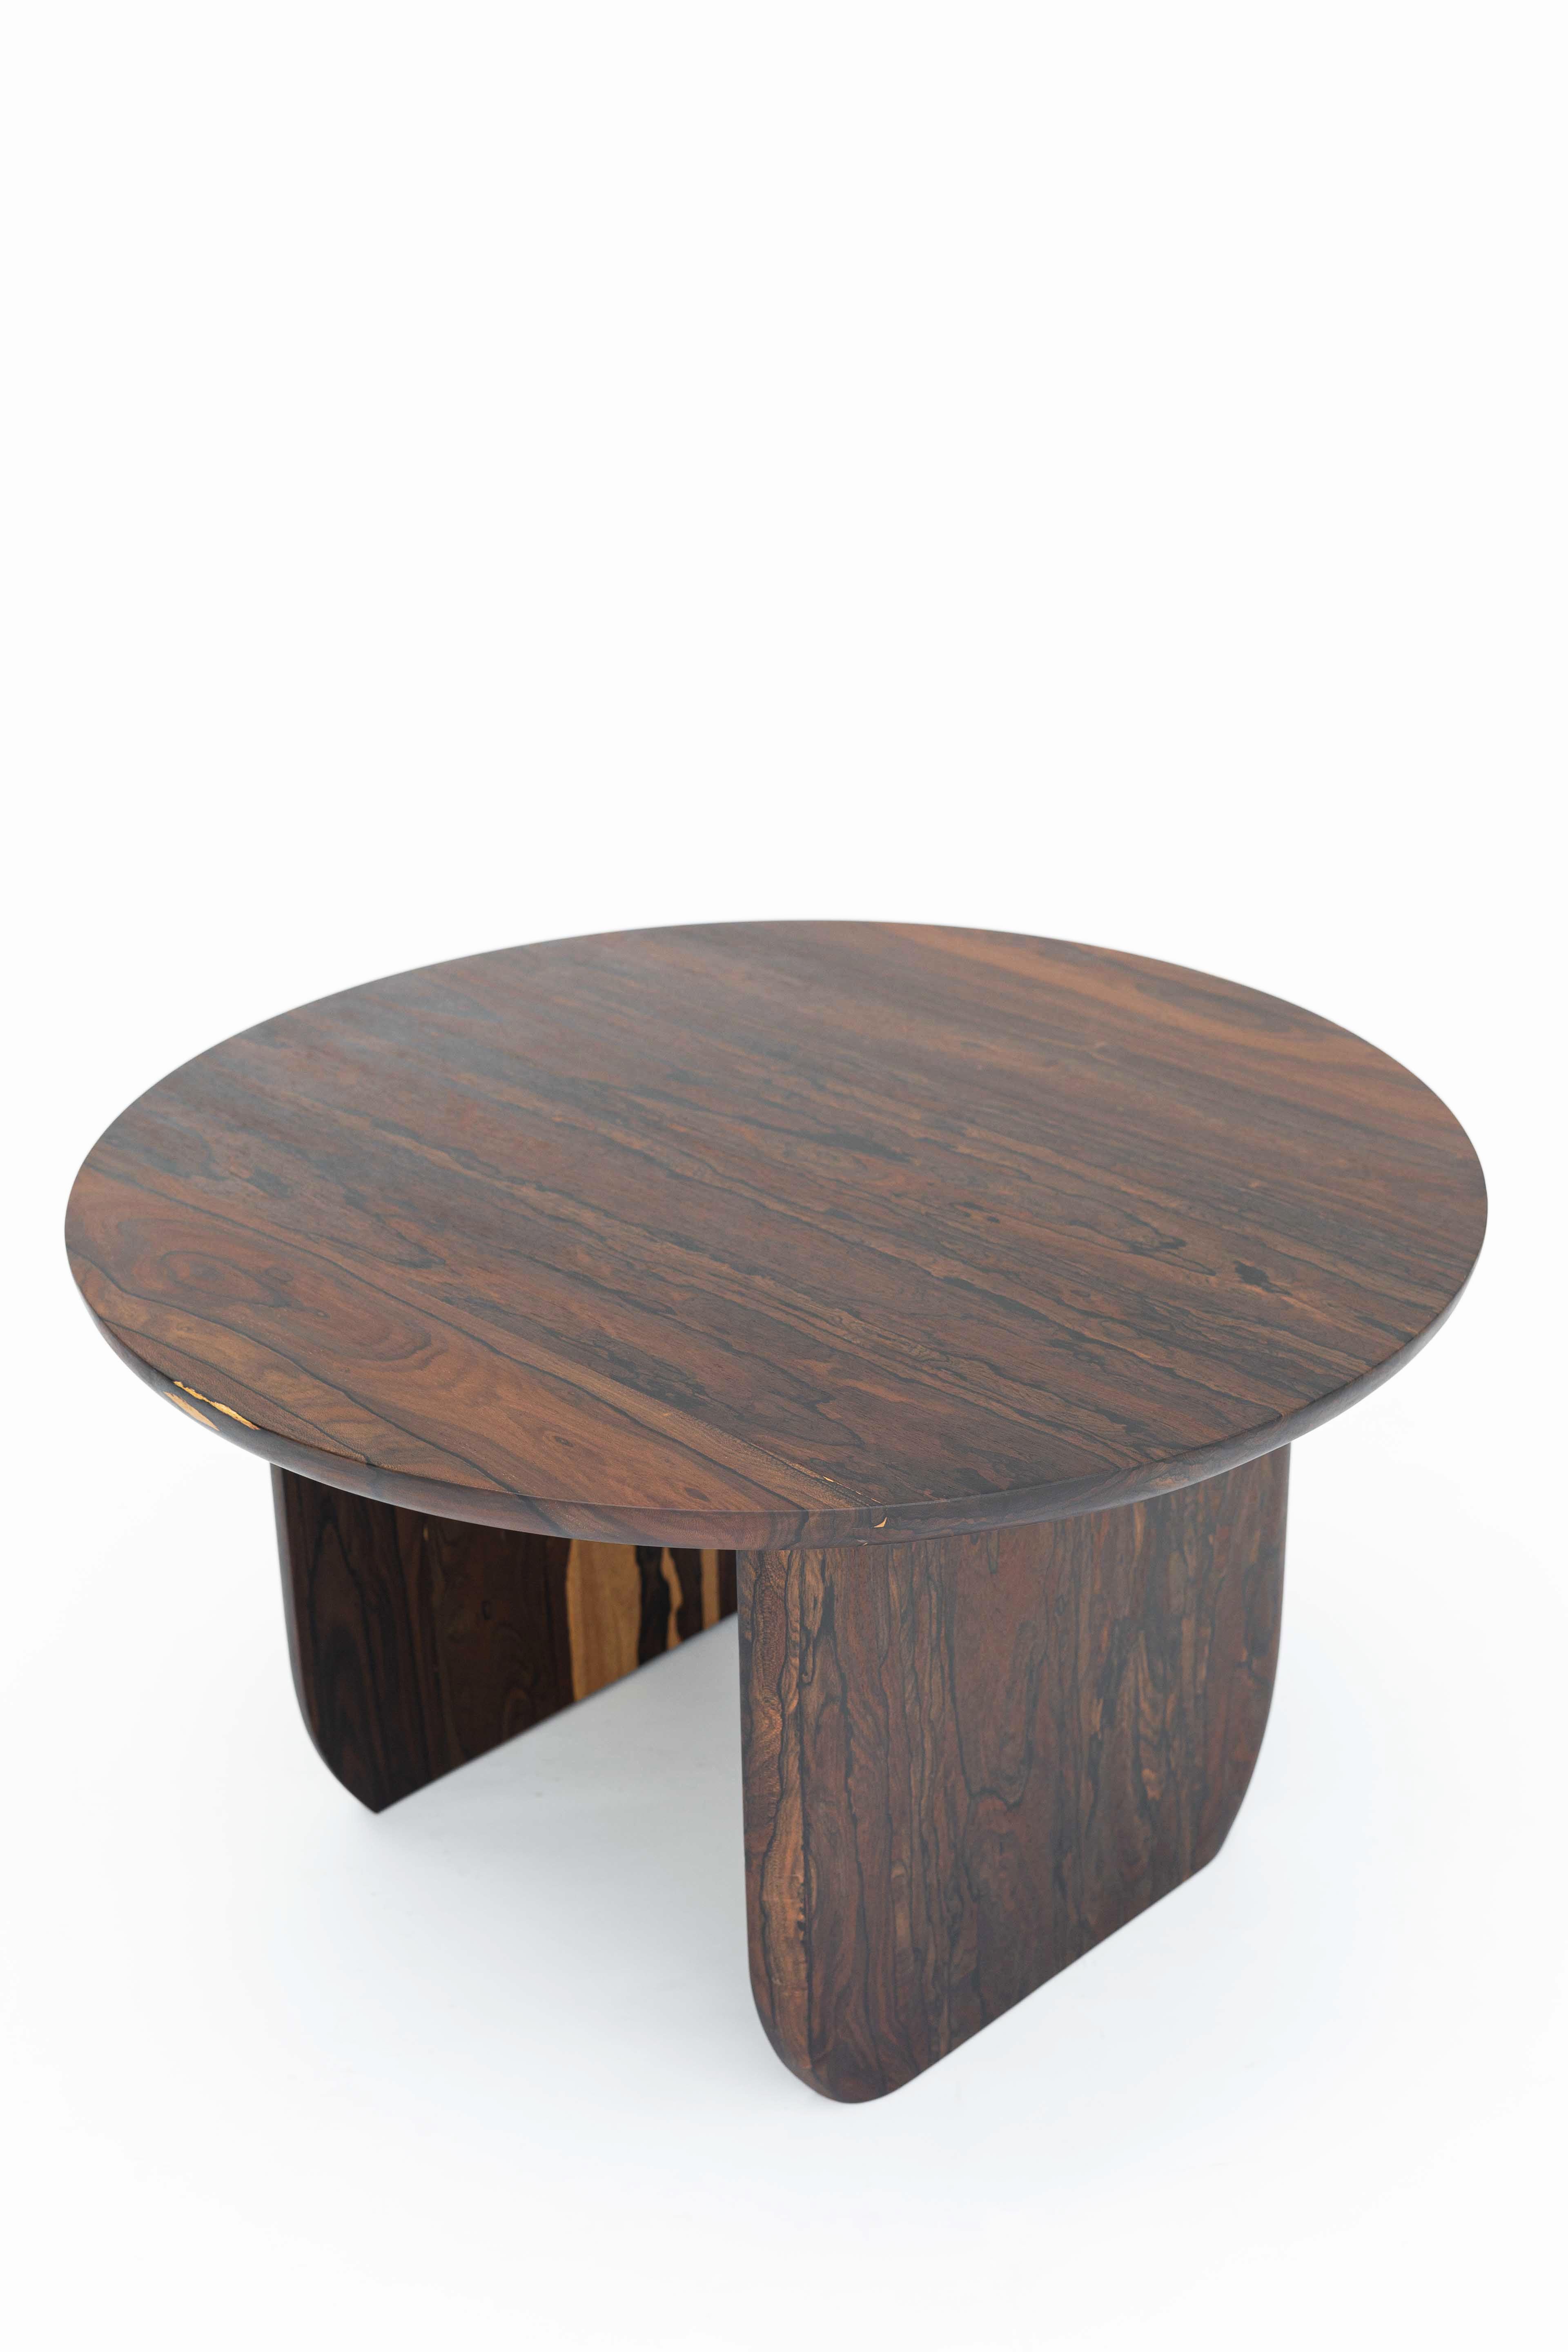 Cette table basse est élaborée à partir de remarquables planches de bois provenant du ziricote, l'un des bois durs les plus appréciés du sud du Mexique. Il se caractérise par ses beaux dessins naturels avec des tons de couleur allant du brun au noir